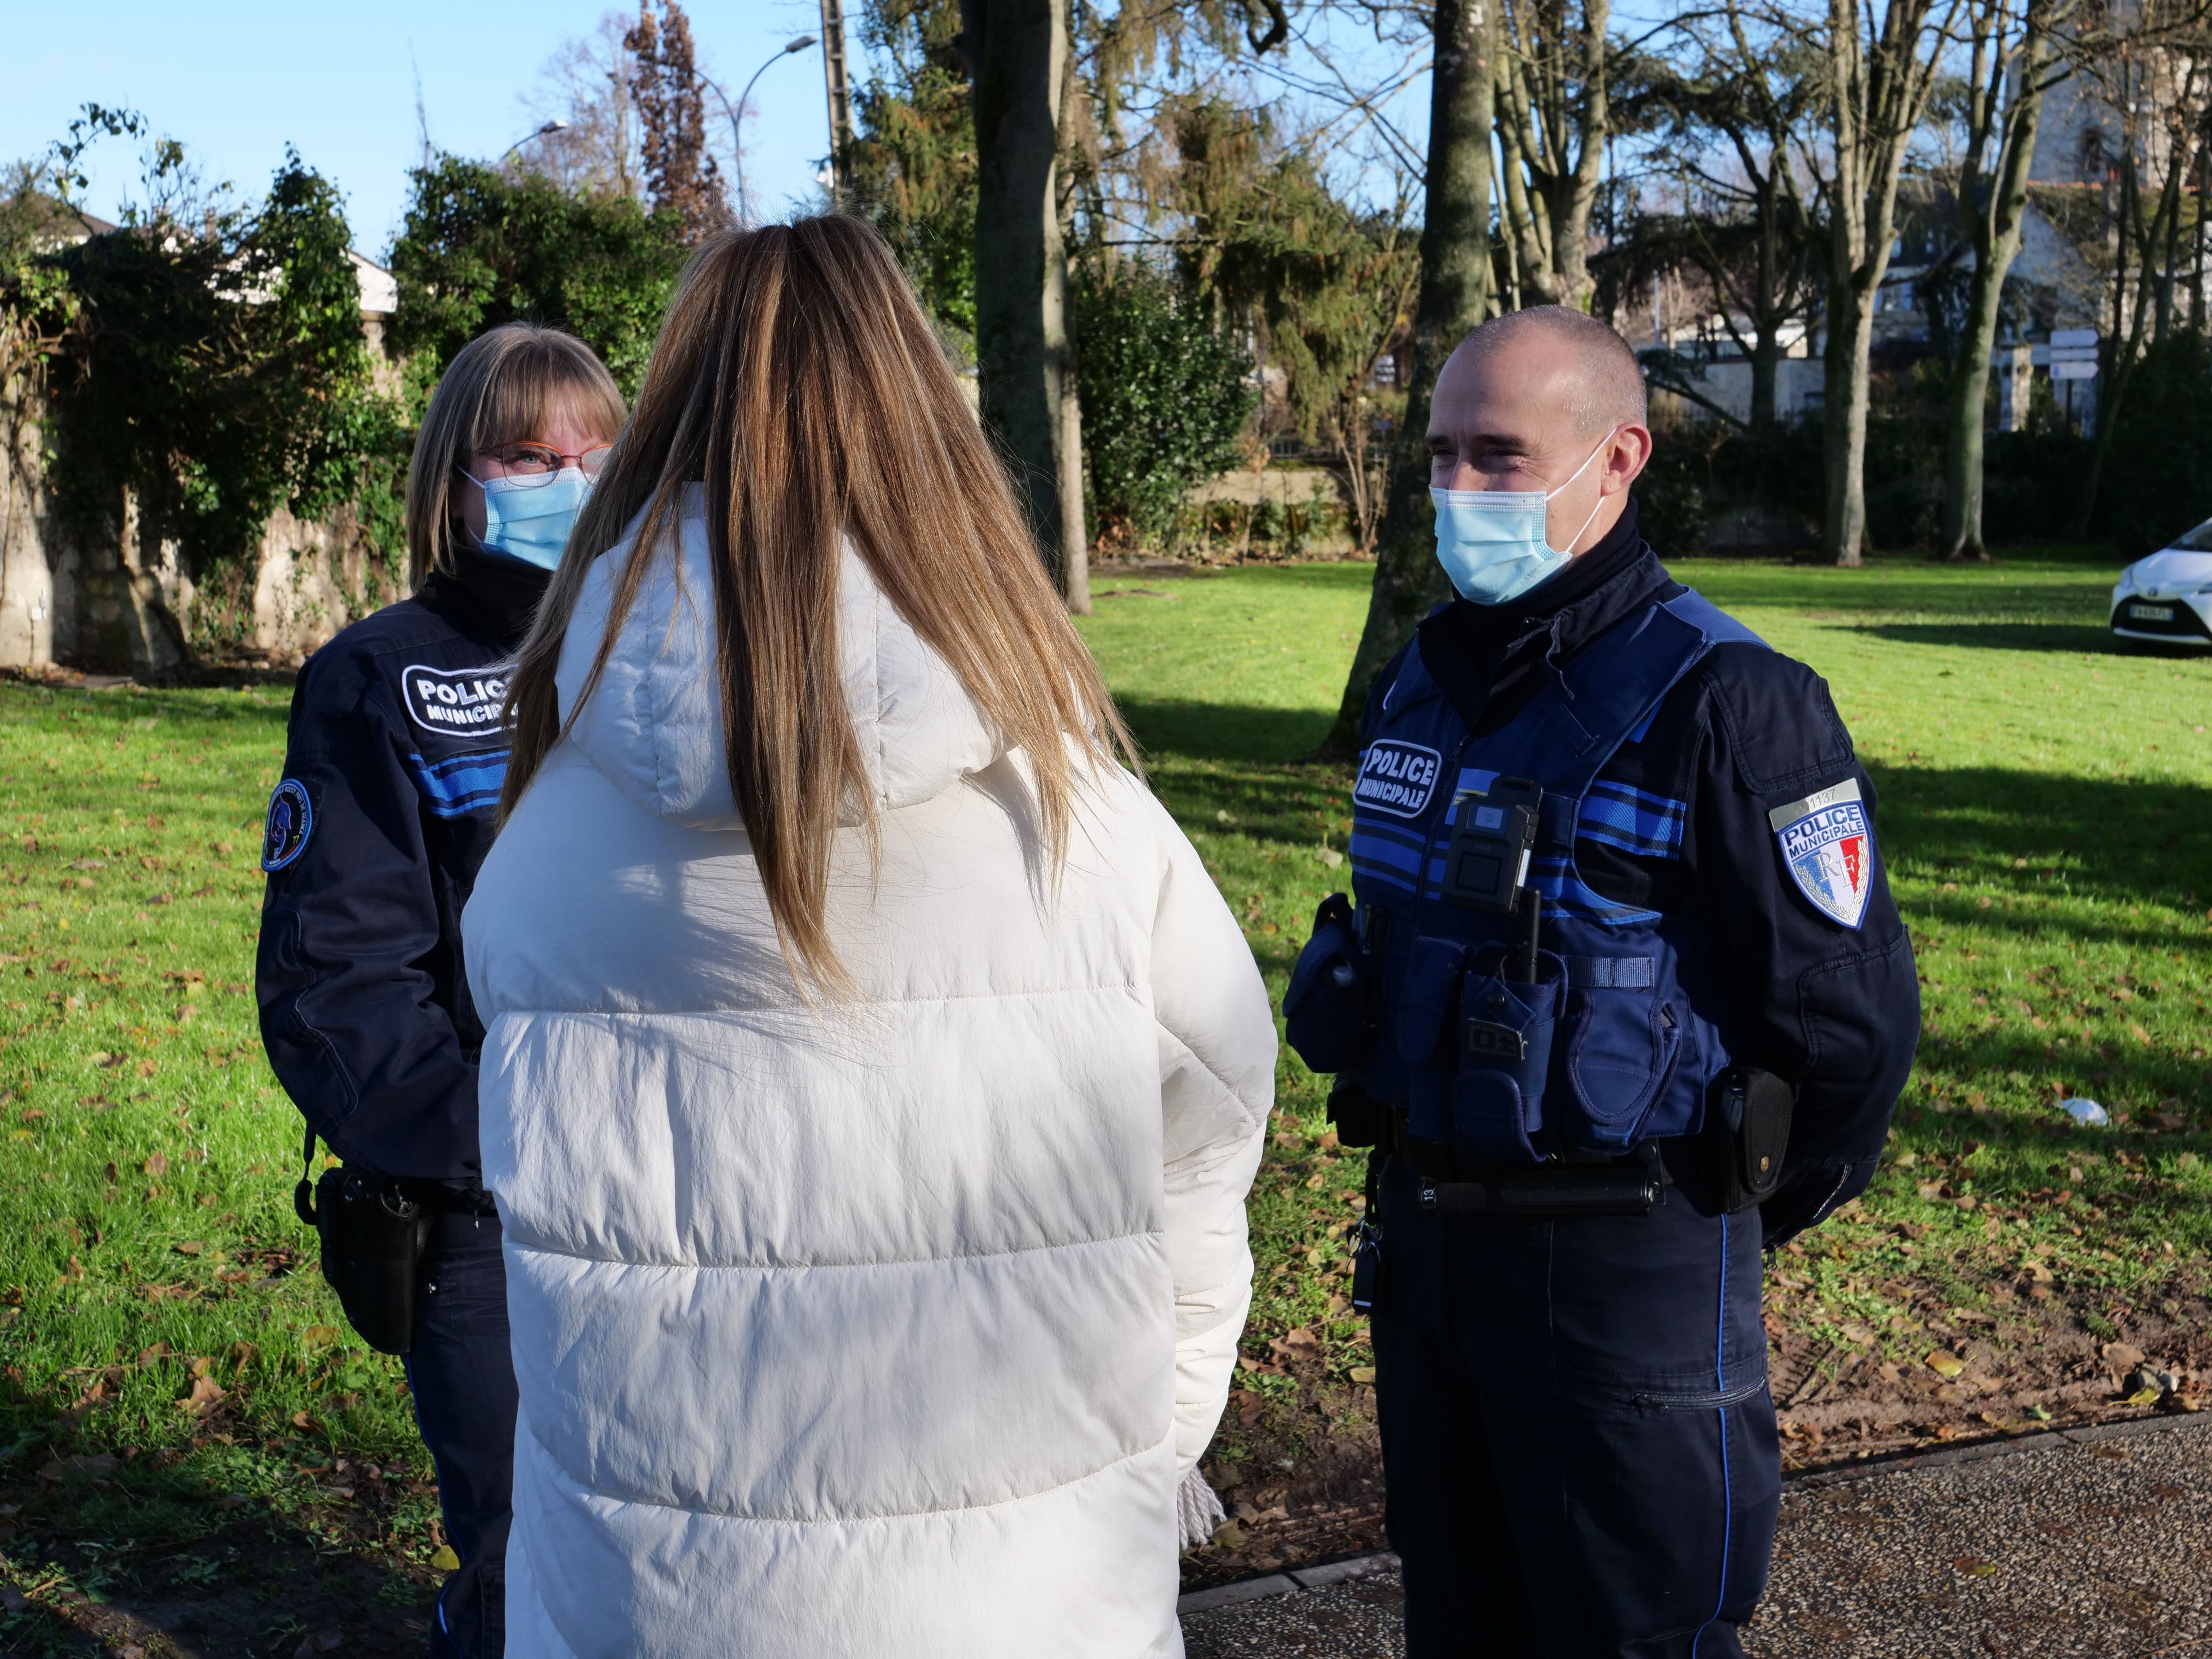 La police intercommunale et interdépartementale intervient dans 17 communes, 10 du Val-d’Oise et 7 de Seine-et-Marne, soit un bassin de quelque 60000 habitants. /Communauté d'agglomération Roissy- Pays-de-France